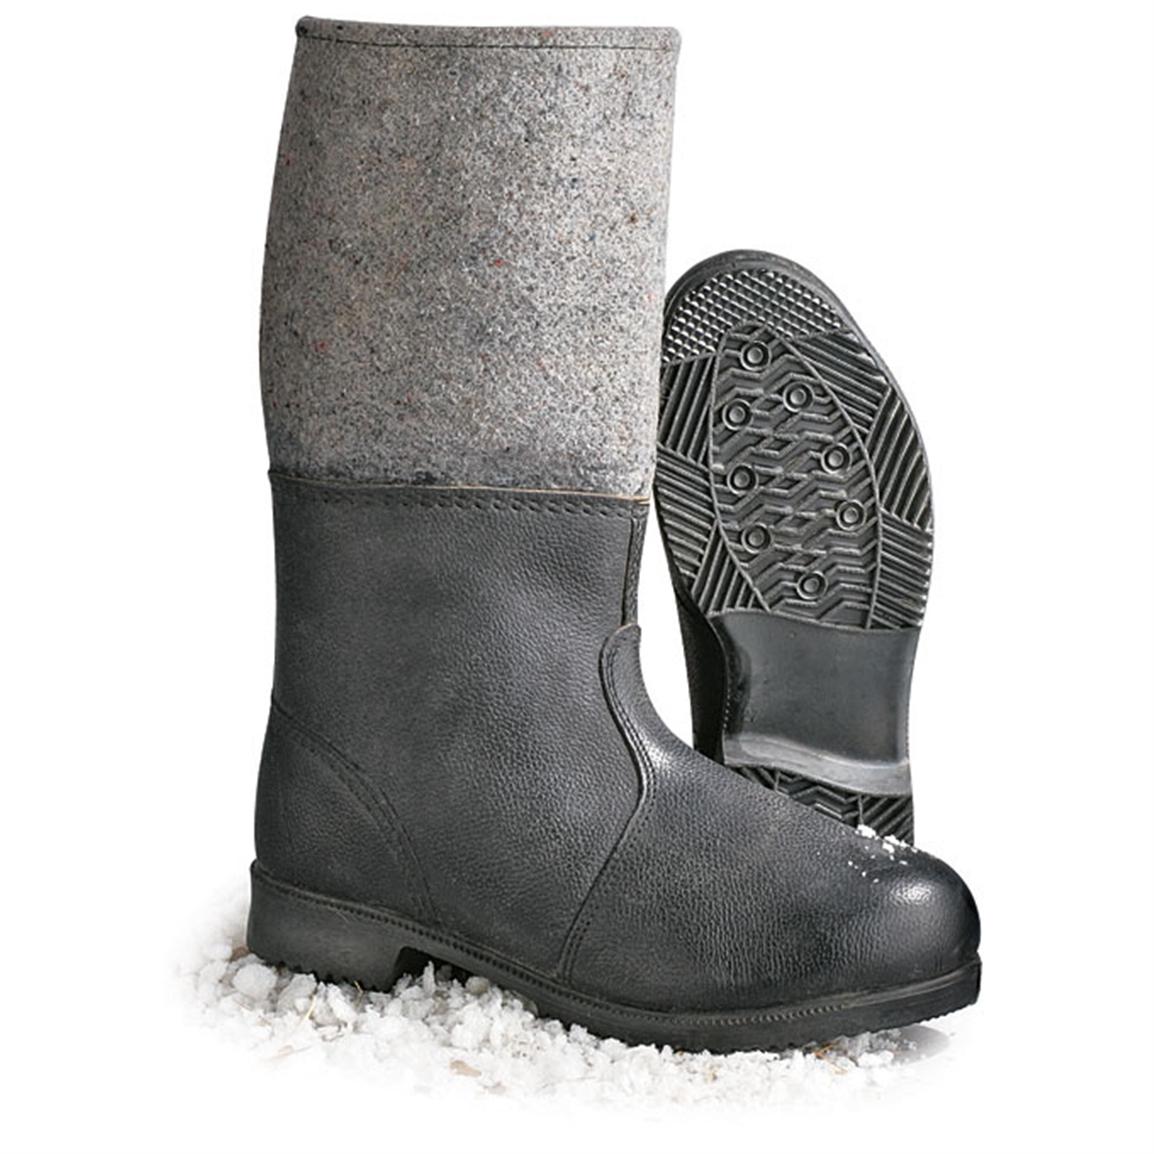 felt winter boots